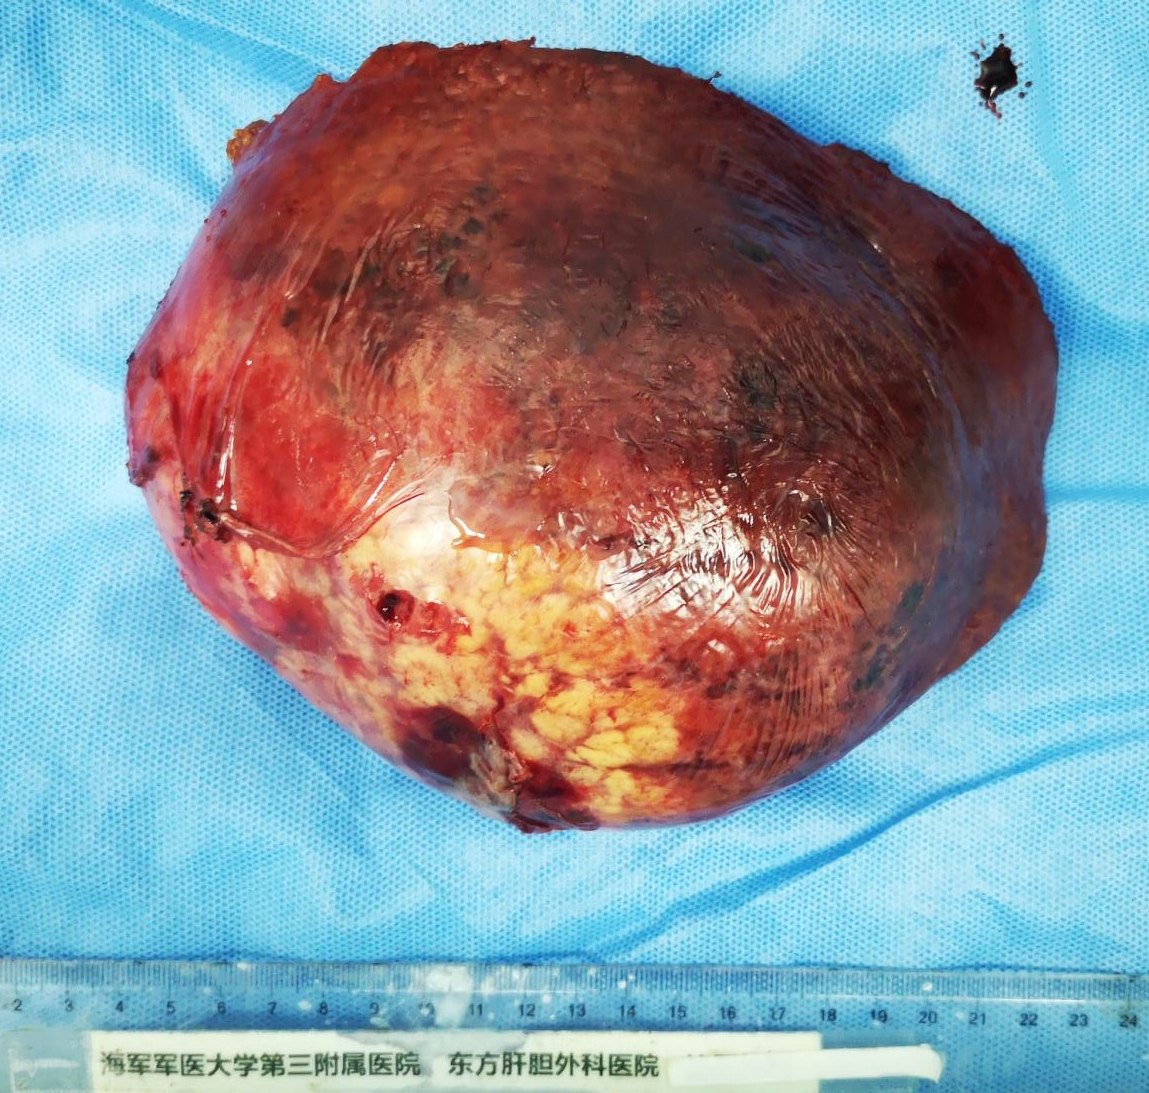 巨块型肝癌的手术切除